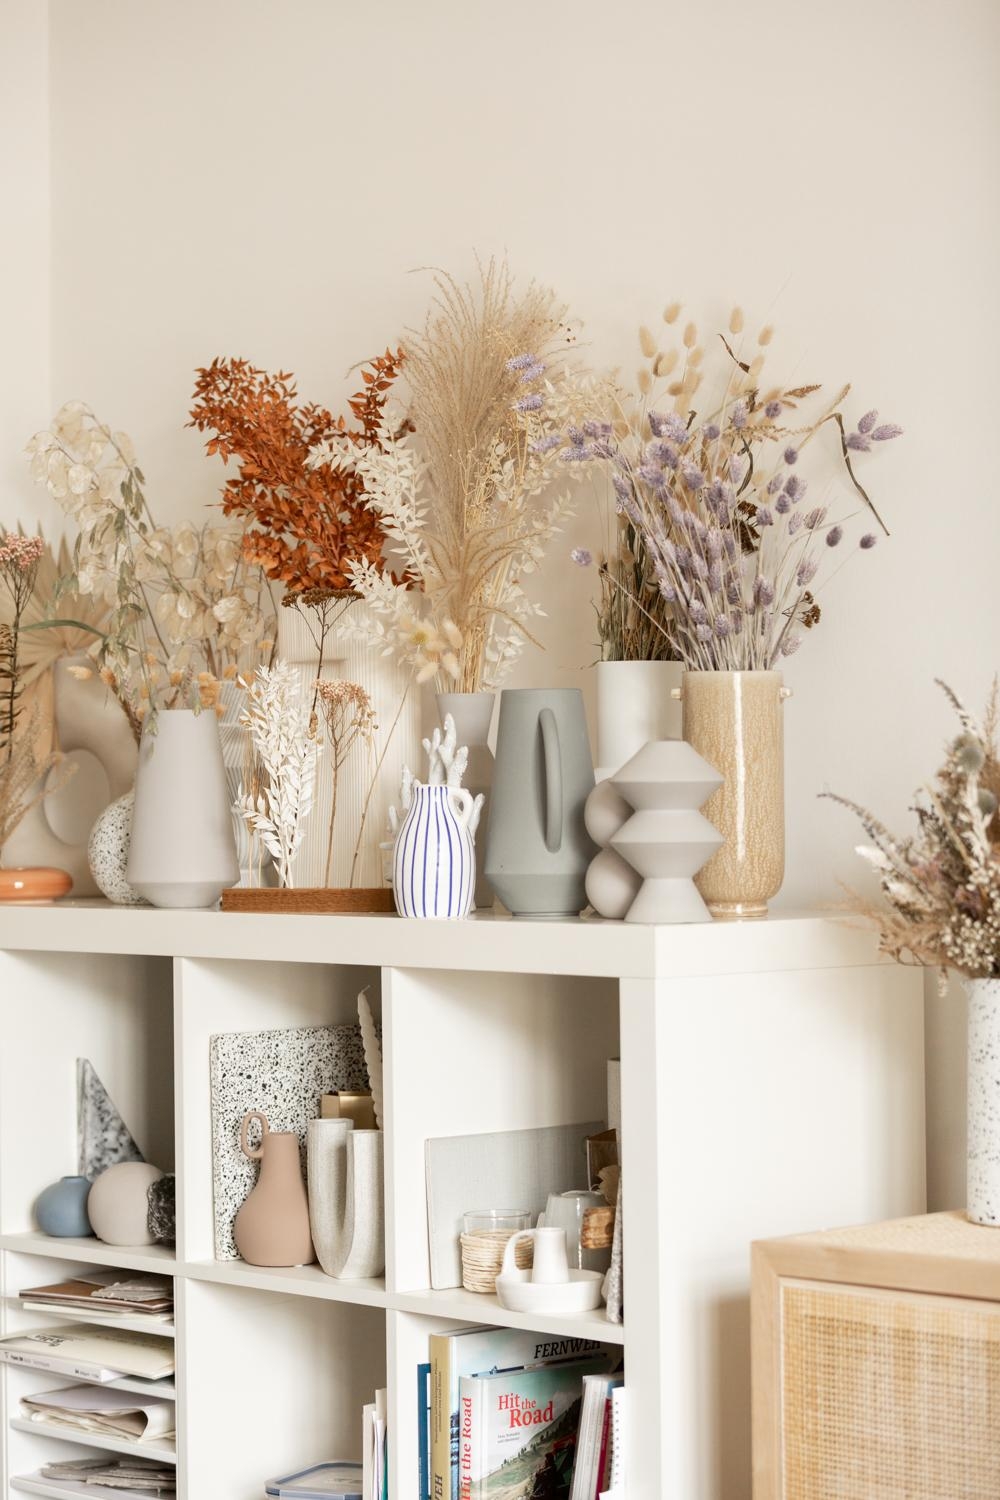 Meine Trockenblumen- und Vasensammlung im Studio... nicht ordentlich, aber ich mag das kreative Chaos